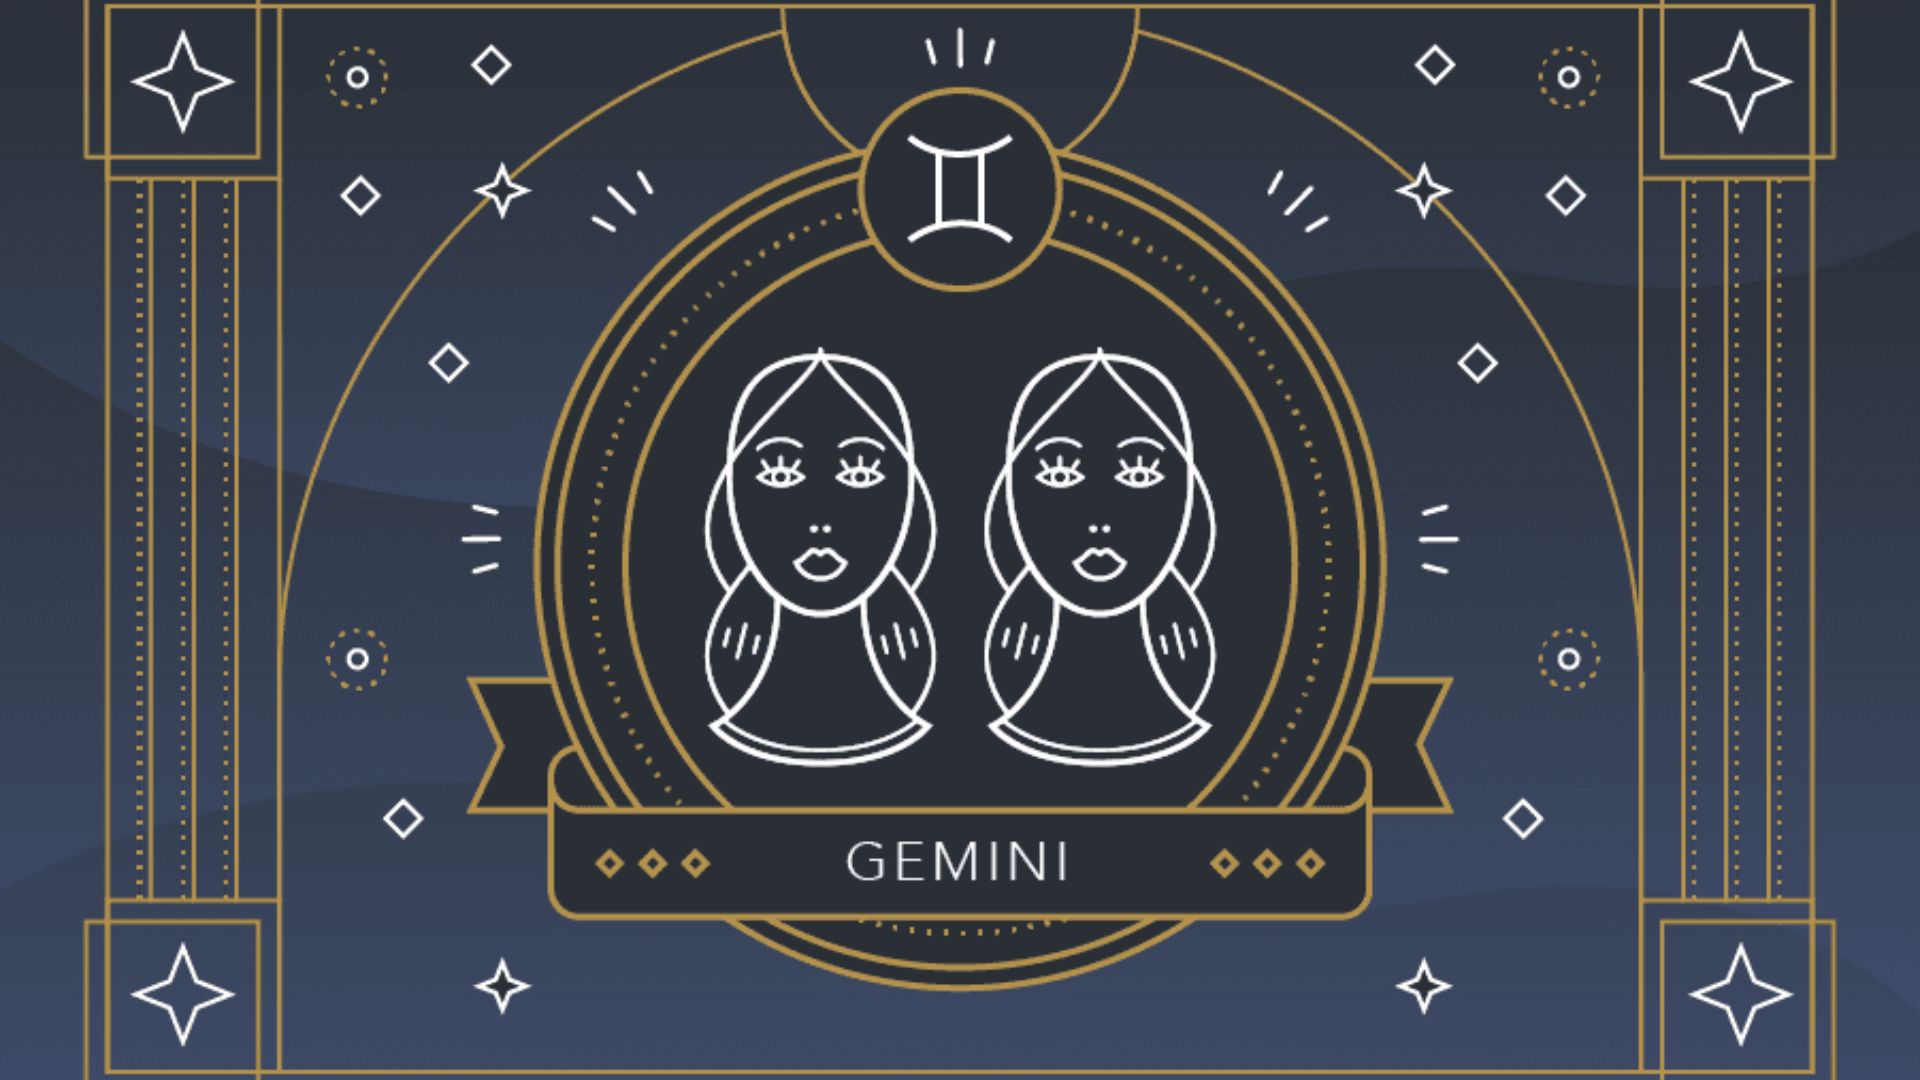 Gemini Sign With Unique Design